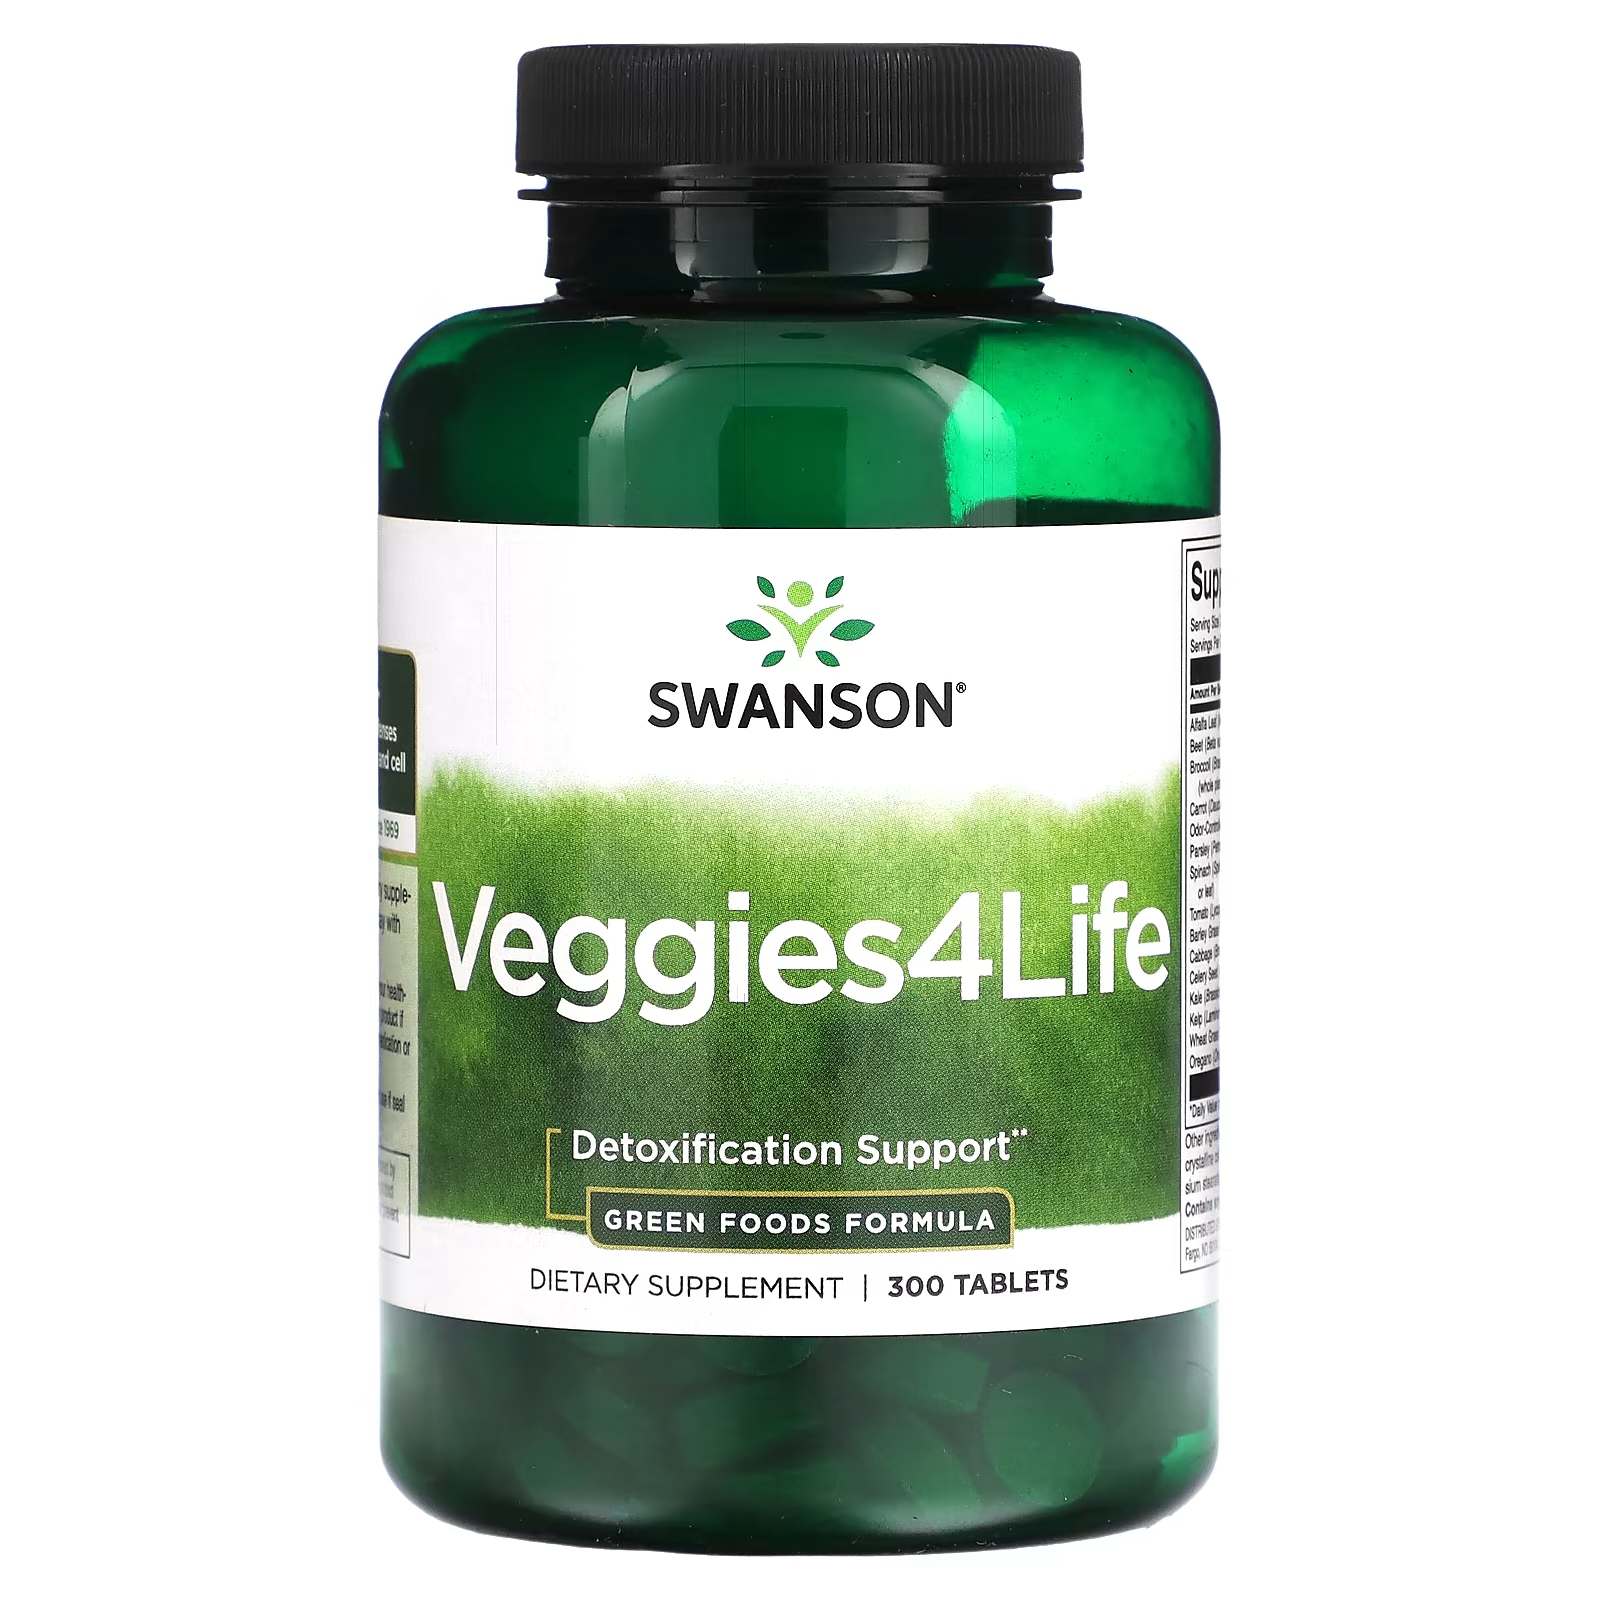 Пищевая добавка Swanson Veggies4Life, 300 таблеток профилактическое питание для детоксикации организма кейс